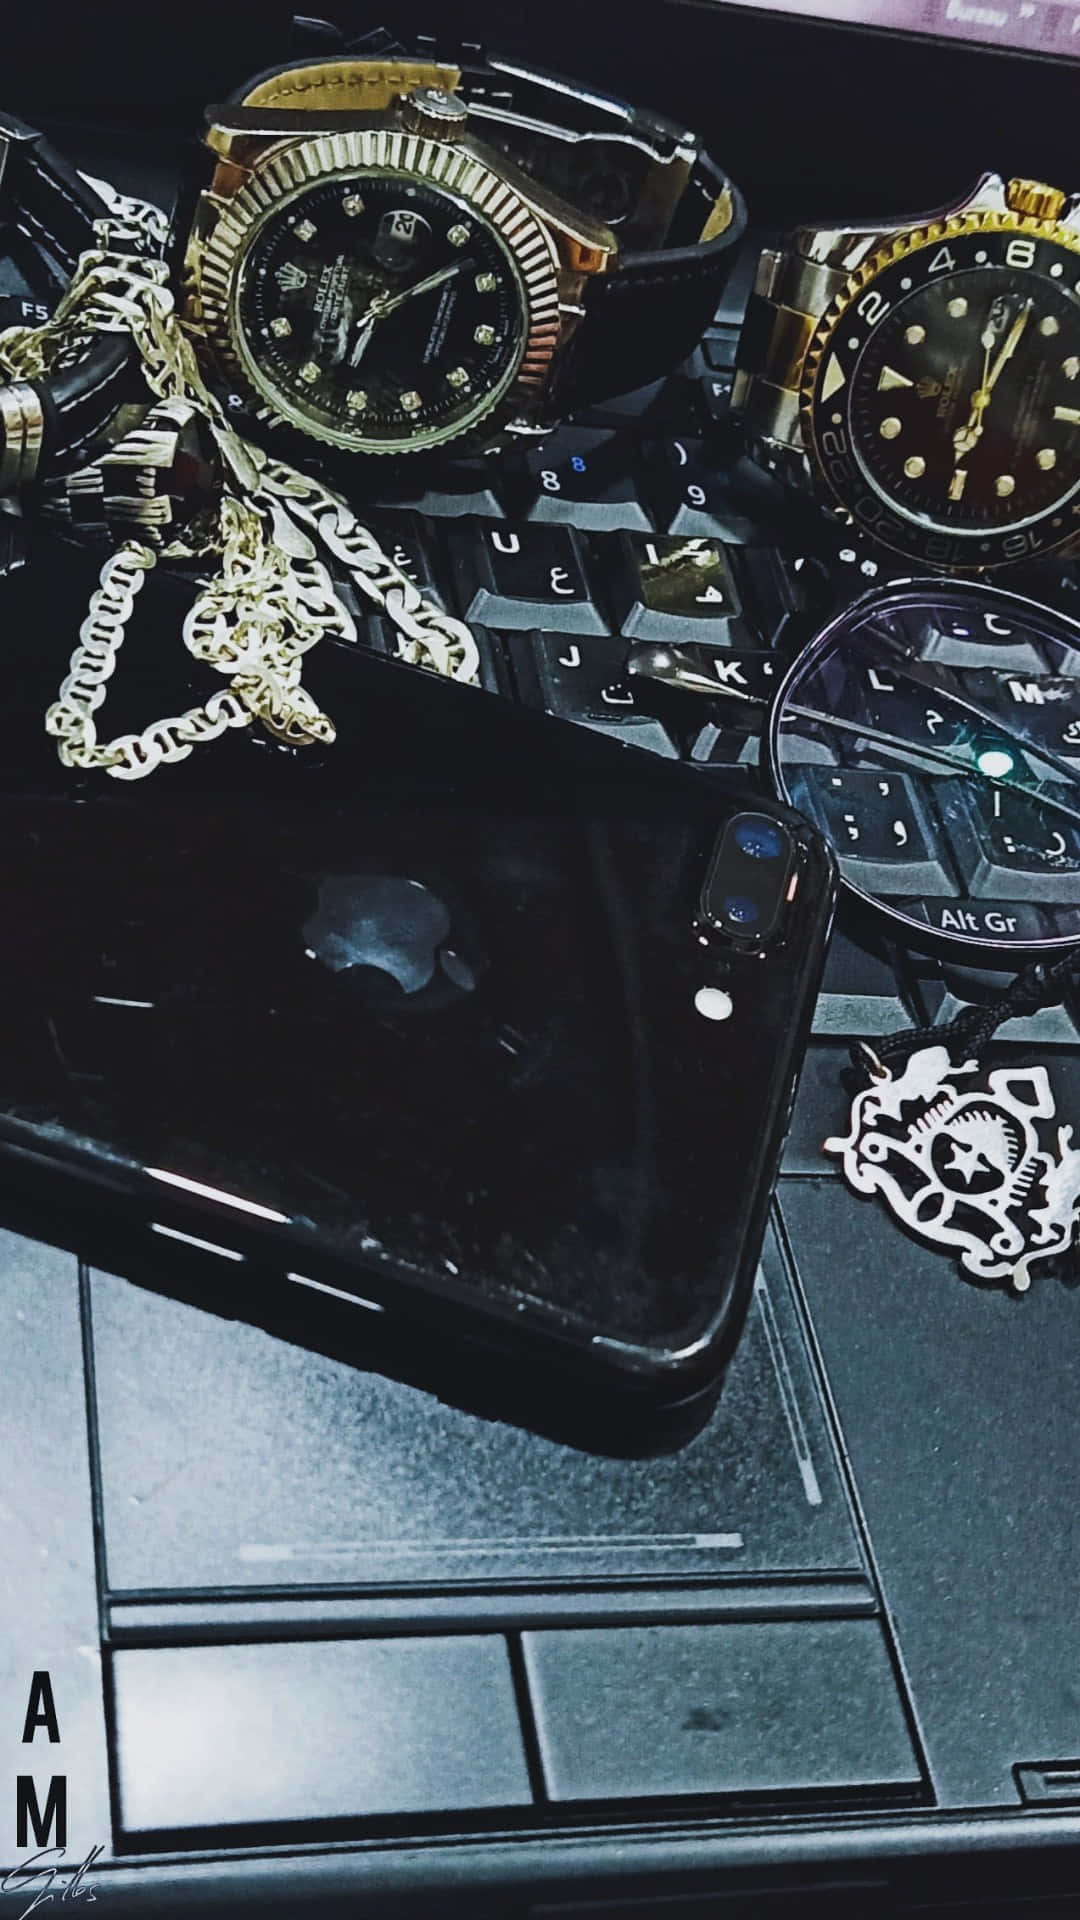 Luxurious Rolex Watch on a Dark Elegant Background